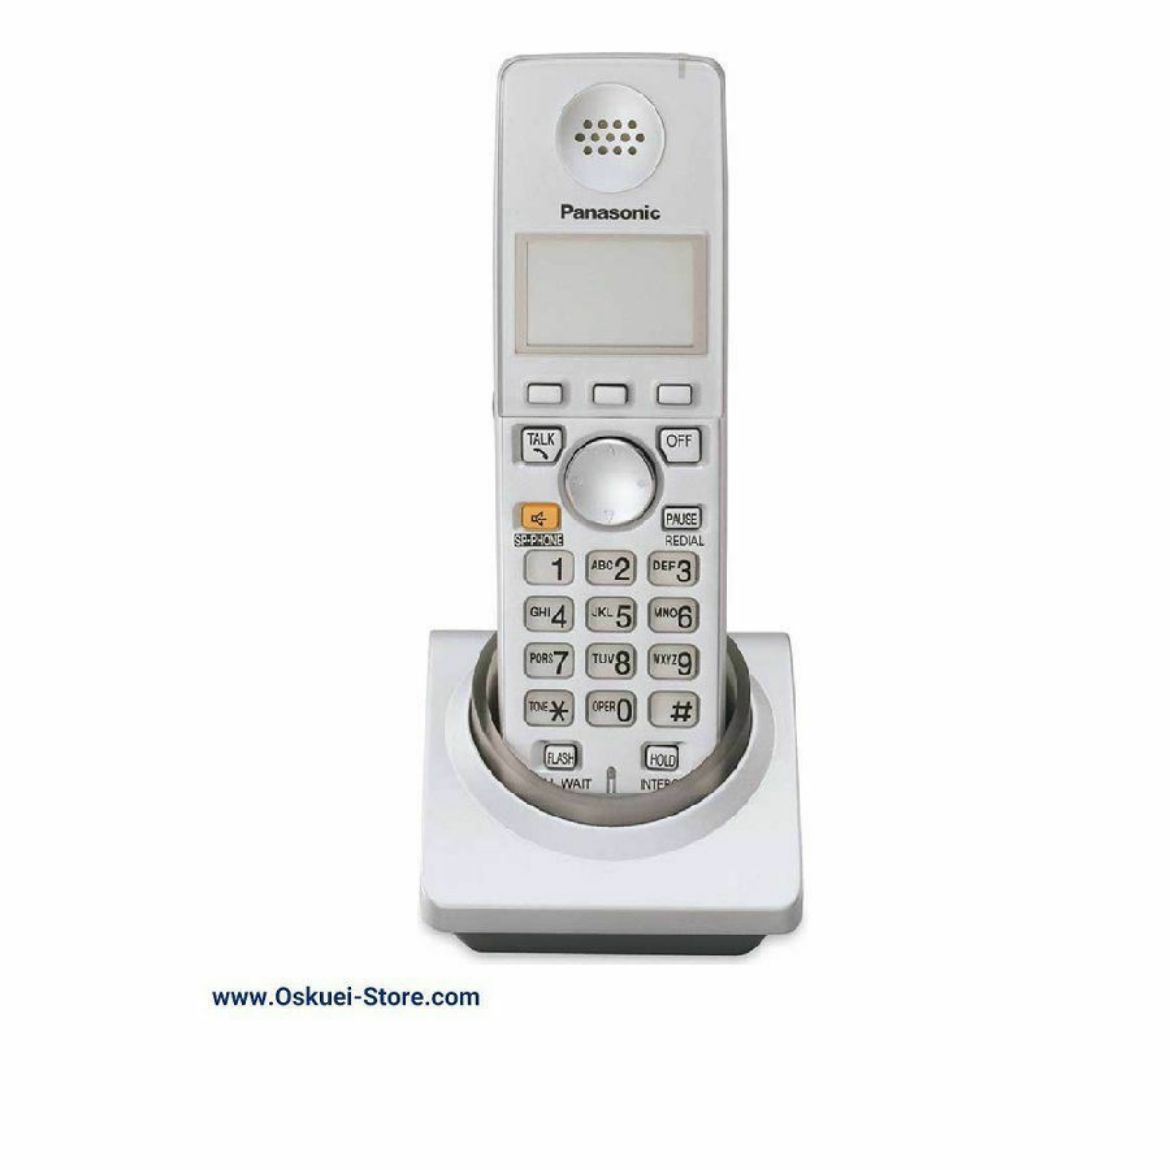 Panasonic KX-TGA572 Cordless Telephone White